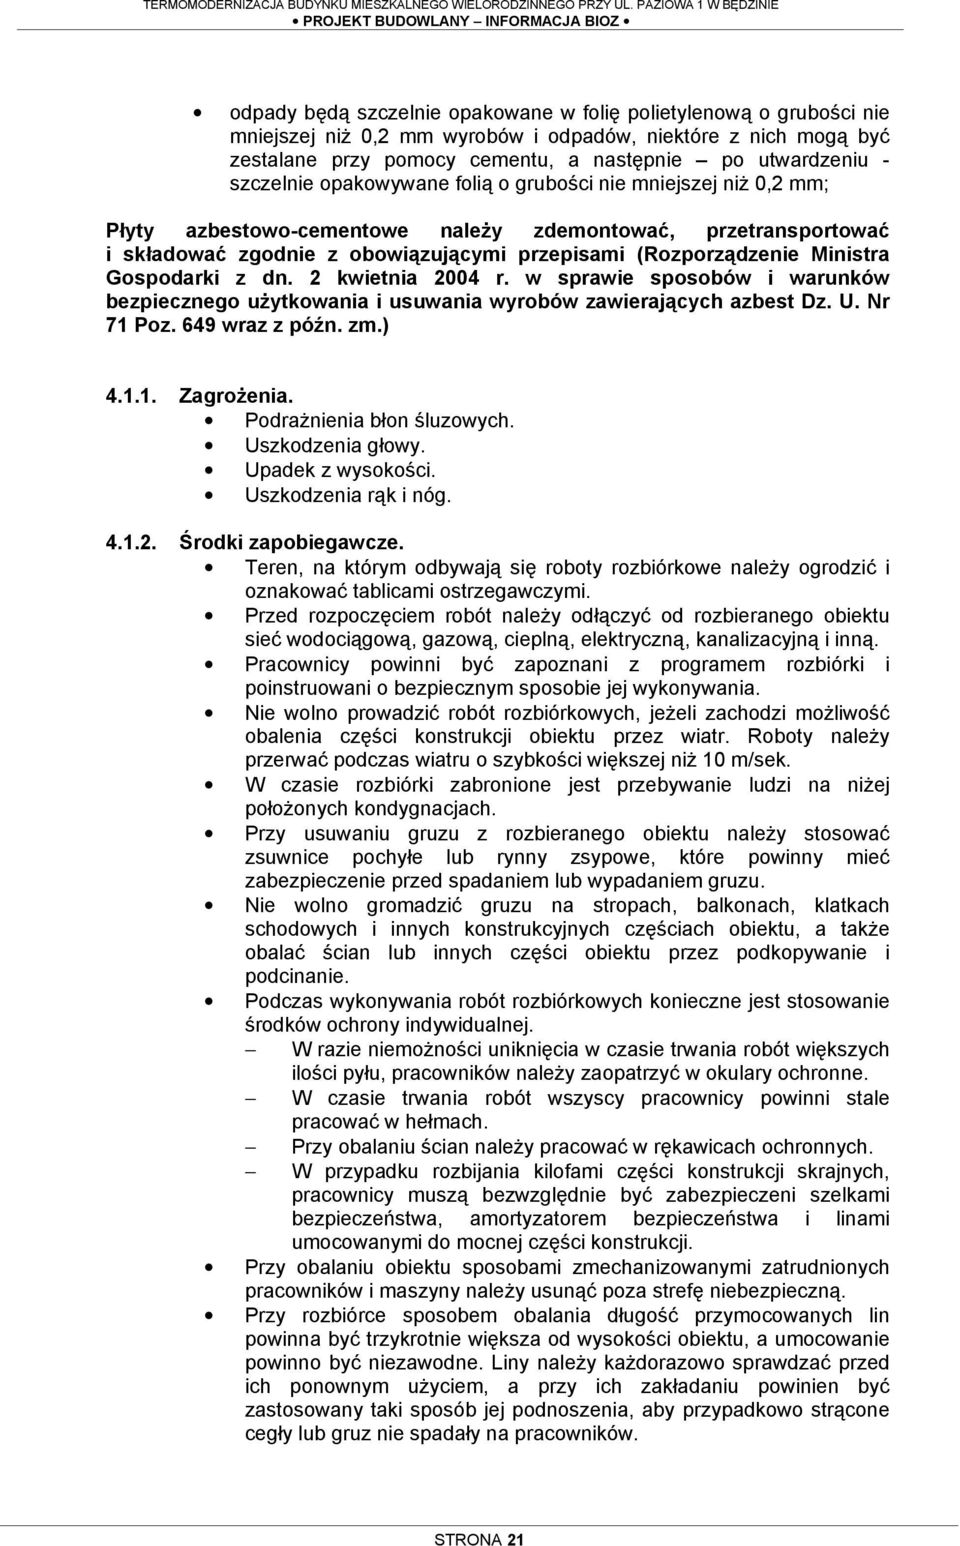 przepisami (Rozporządzenie Ministra Gospodarki z dn. 2 kwietnia 2004 r. w sprawie sposobów i warunków bezpiecznego uŝytkowania i usuwania wyrobów zawierających azbest Dz. U. Nr 71 Poz.